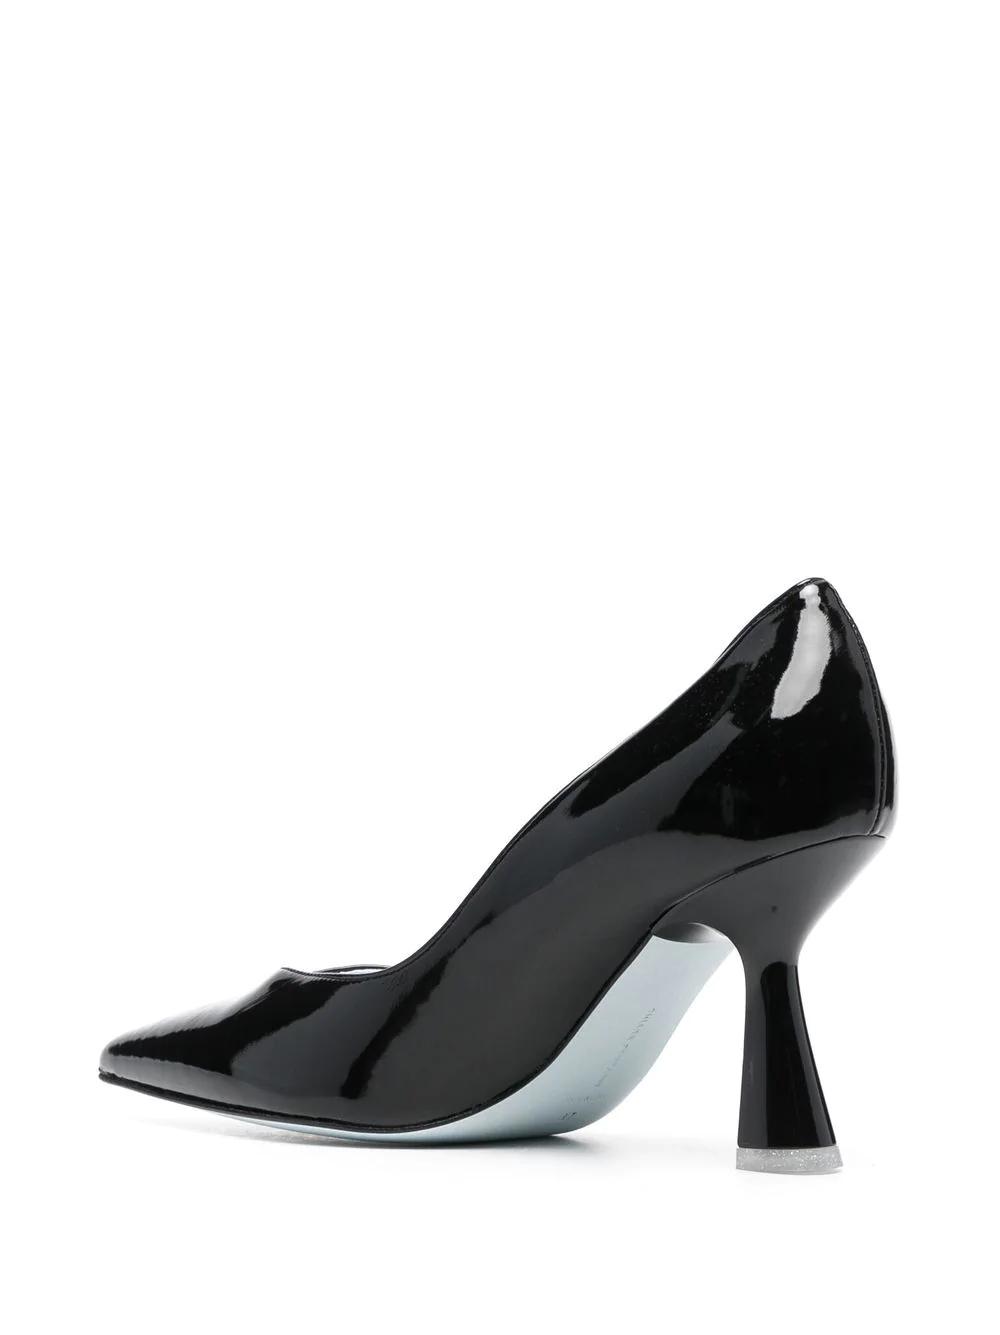 Zapatos de salón Chiara Ferragni negros tacón